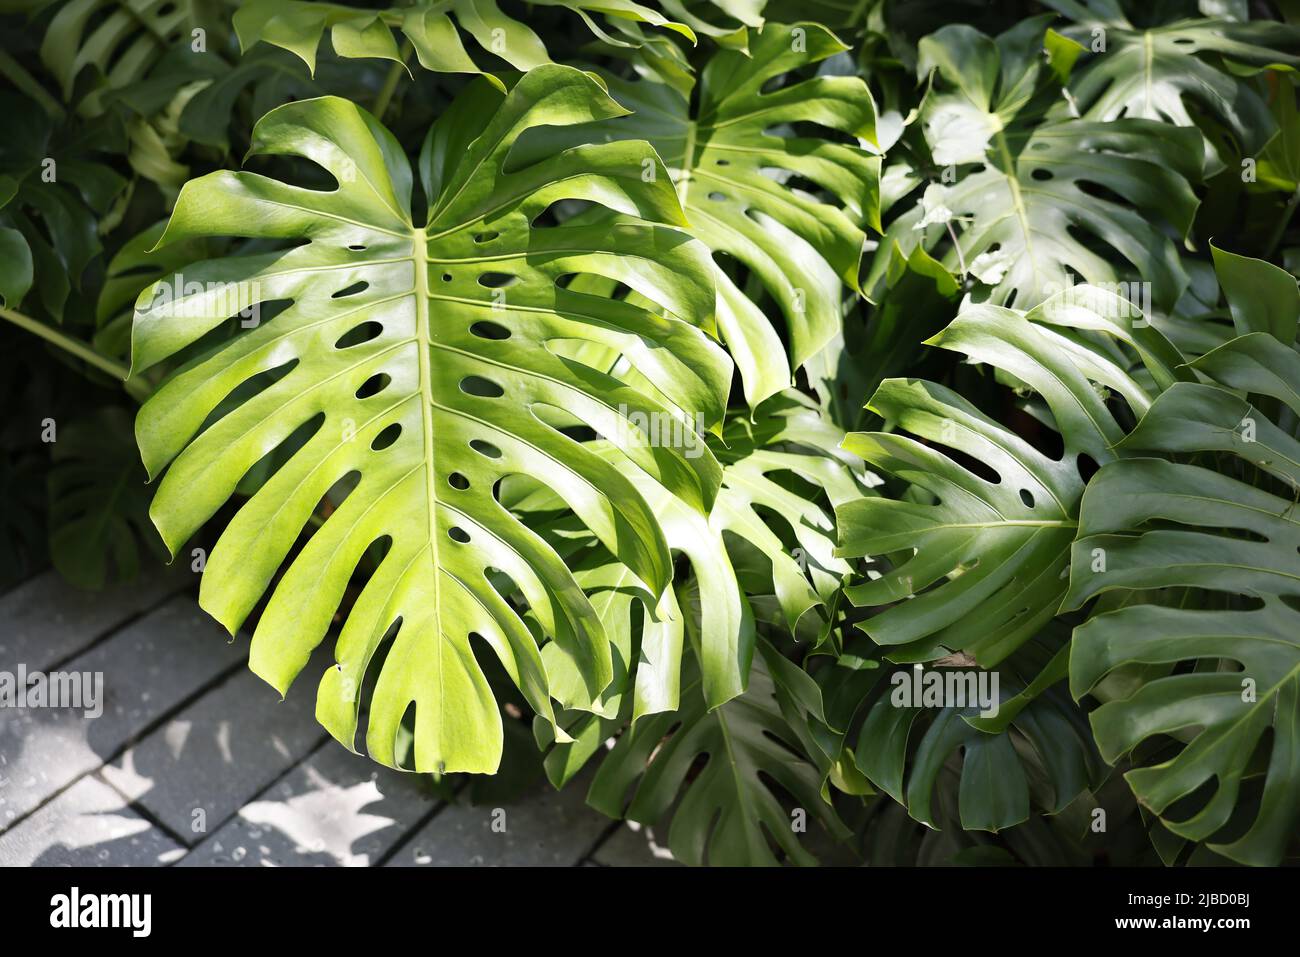 Monstera deliciosa Splittblatt-Philodendron-Pflanze aus Mexiko, die sich  hervorragend zur Luftbefeuchtung im Freien in Innenräumen geeignet ist  Stockfotografie - Alamy